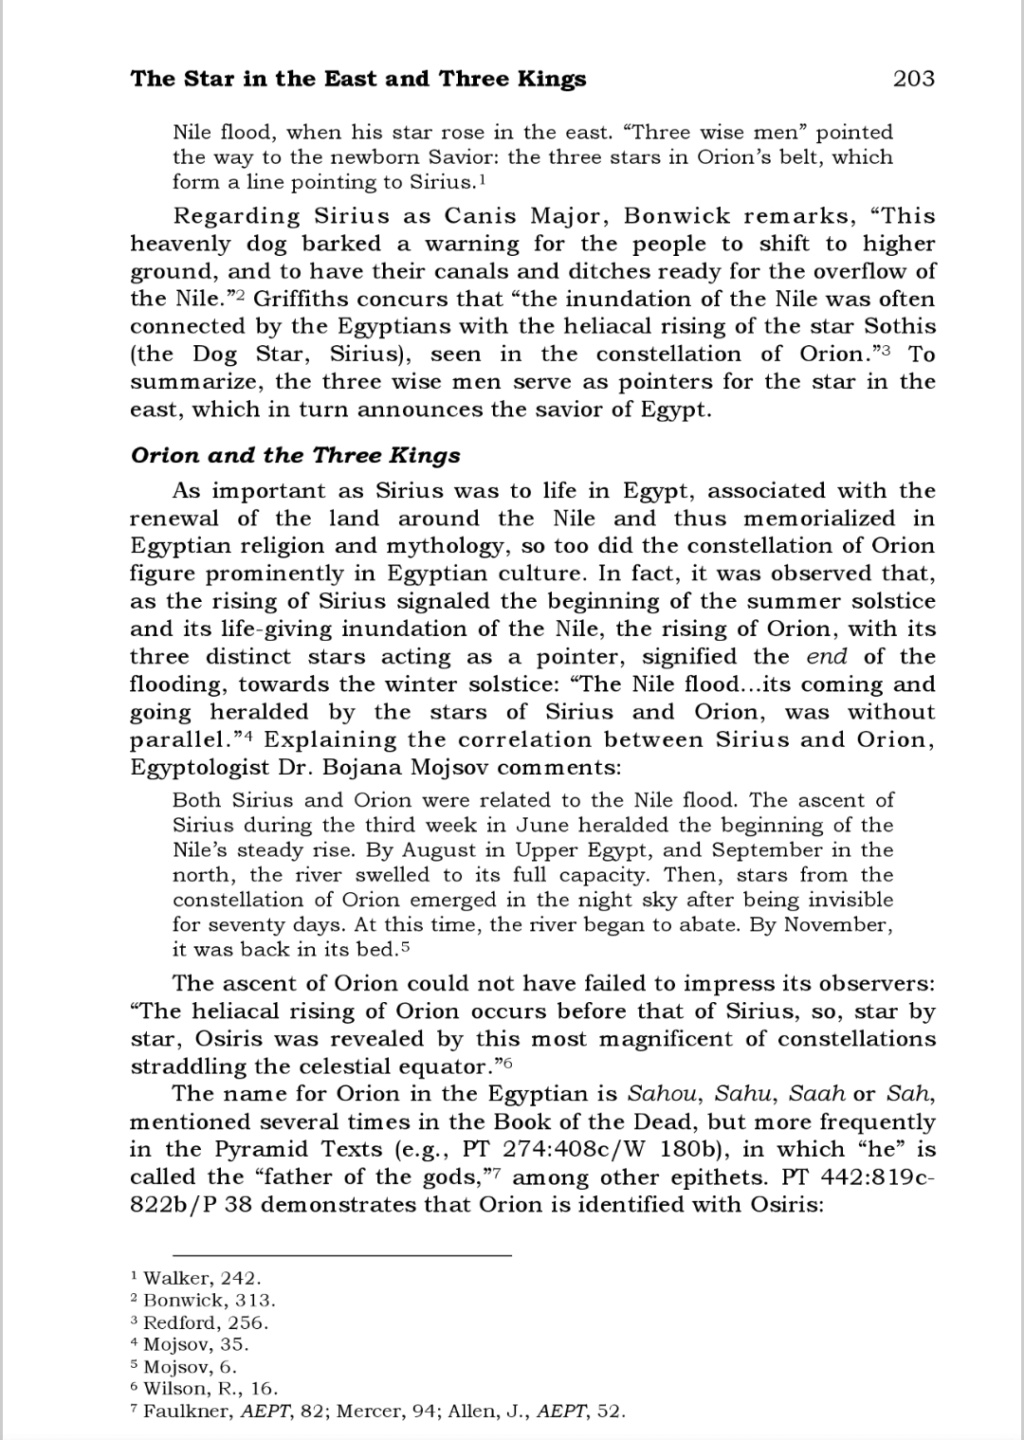 Matthieu 2,1-11 est-il un récit historique digne d'analyse scientifique ? - Page 4 Scre1063